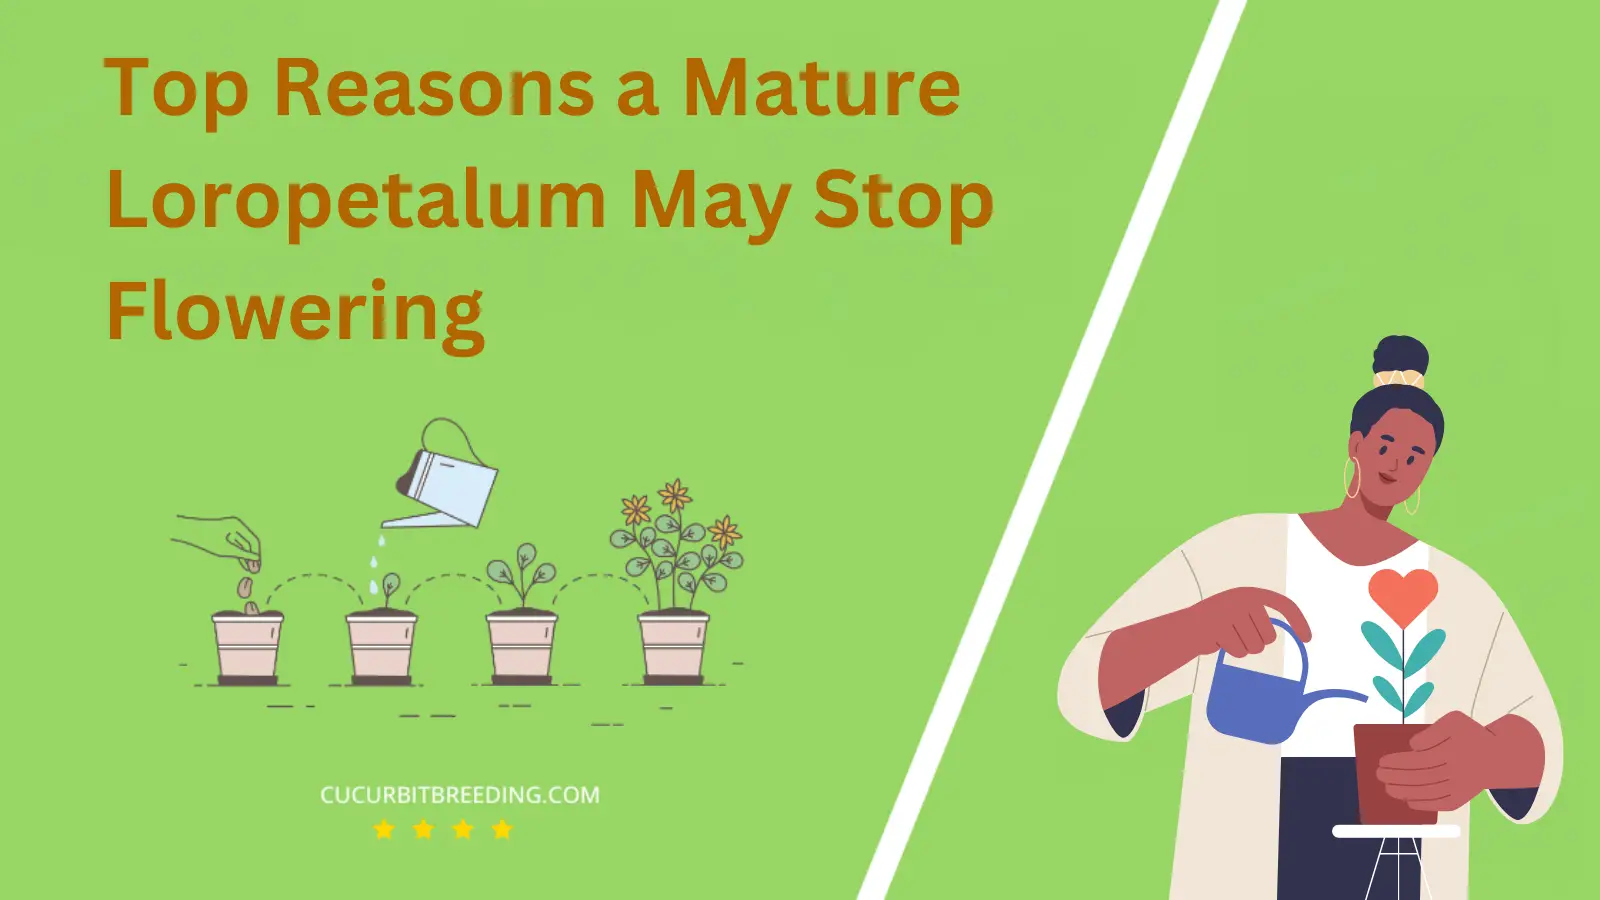 Top Reasons a Mature Loropetalum May Stop Flowering